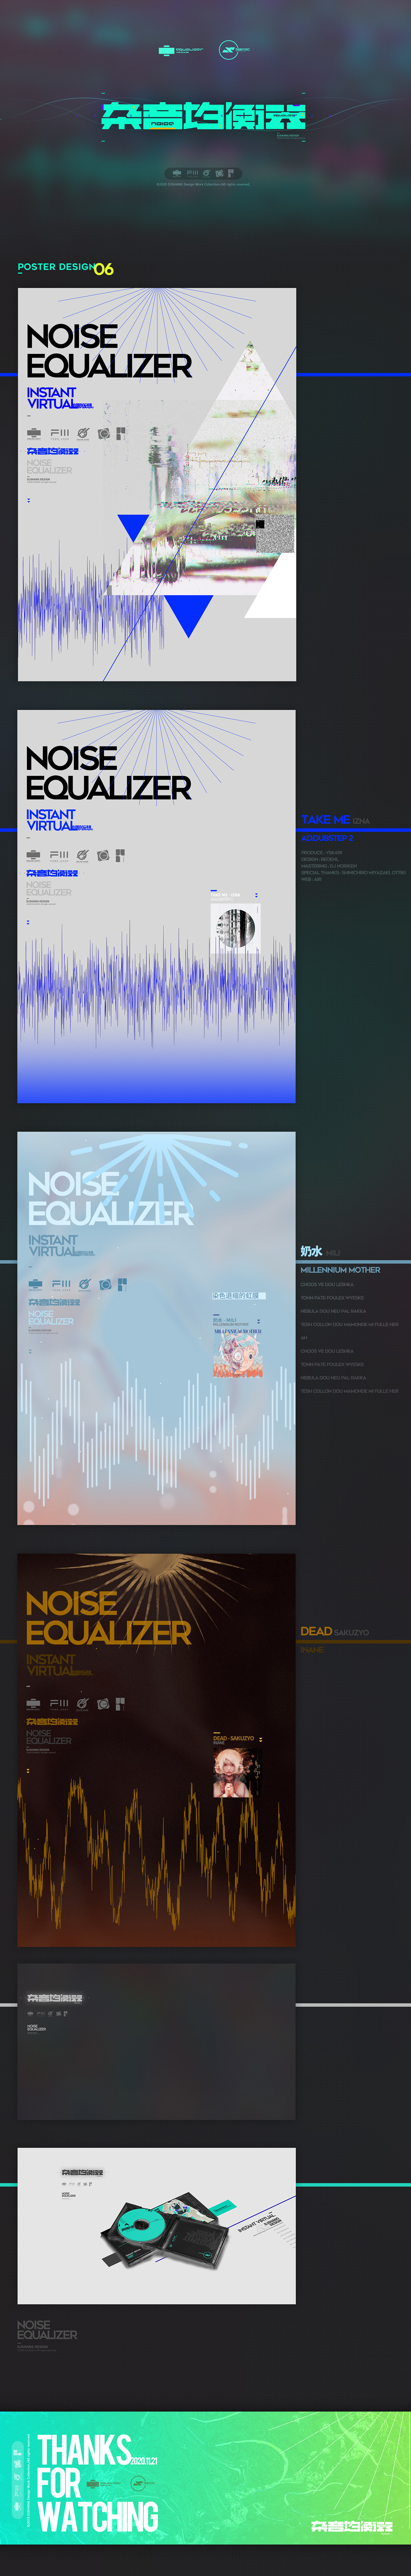 GUI MG动画 UI设计 动态设计 图形设计 字体设计 平面设计 海报设计 视觉设计 音乐游戏